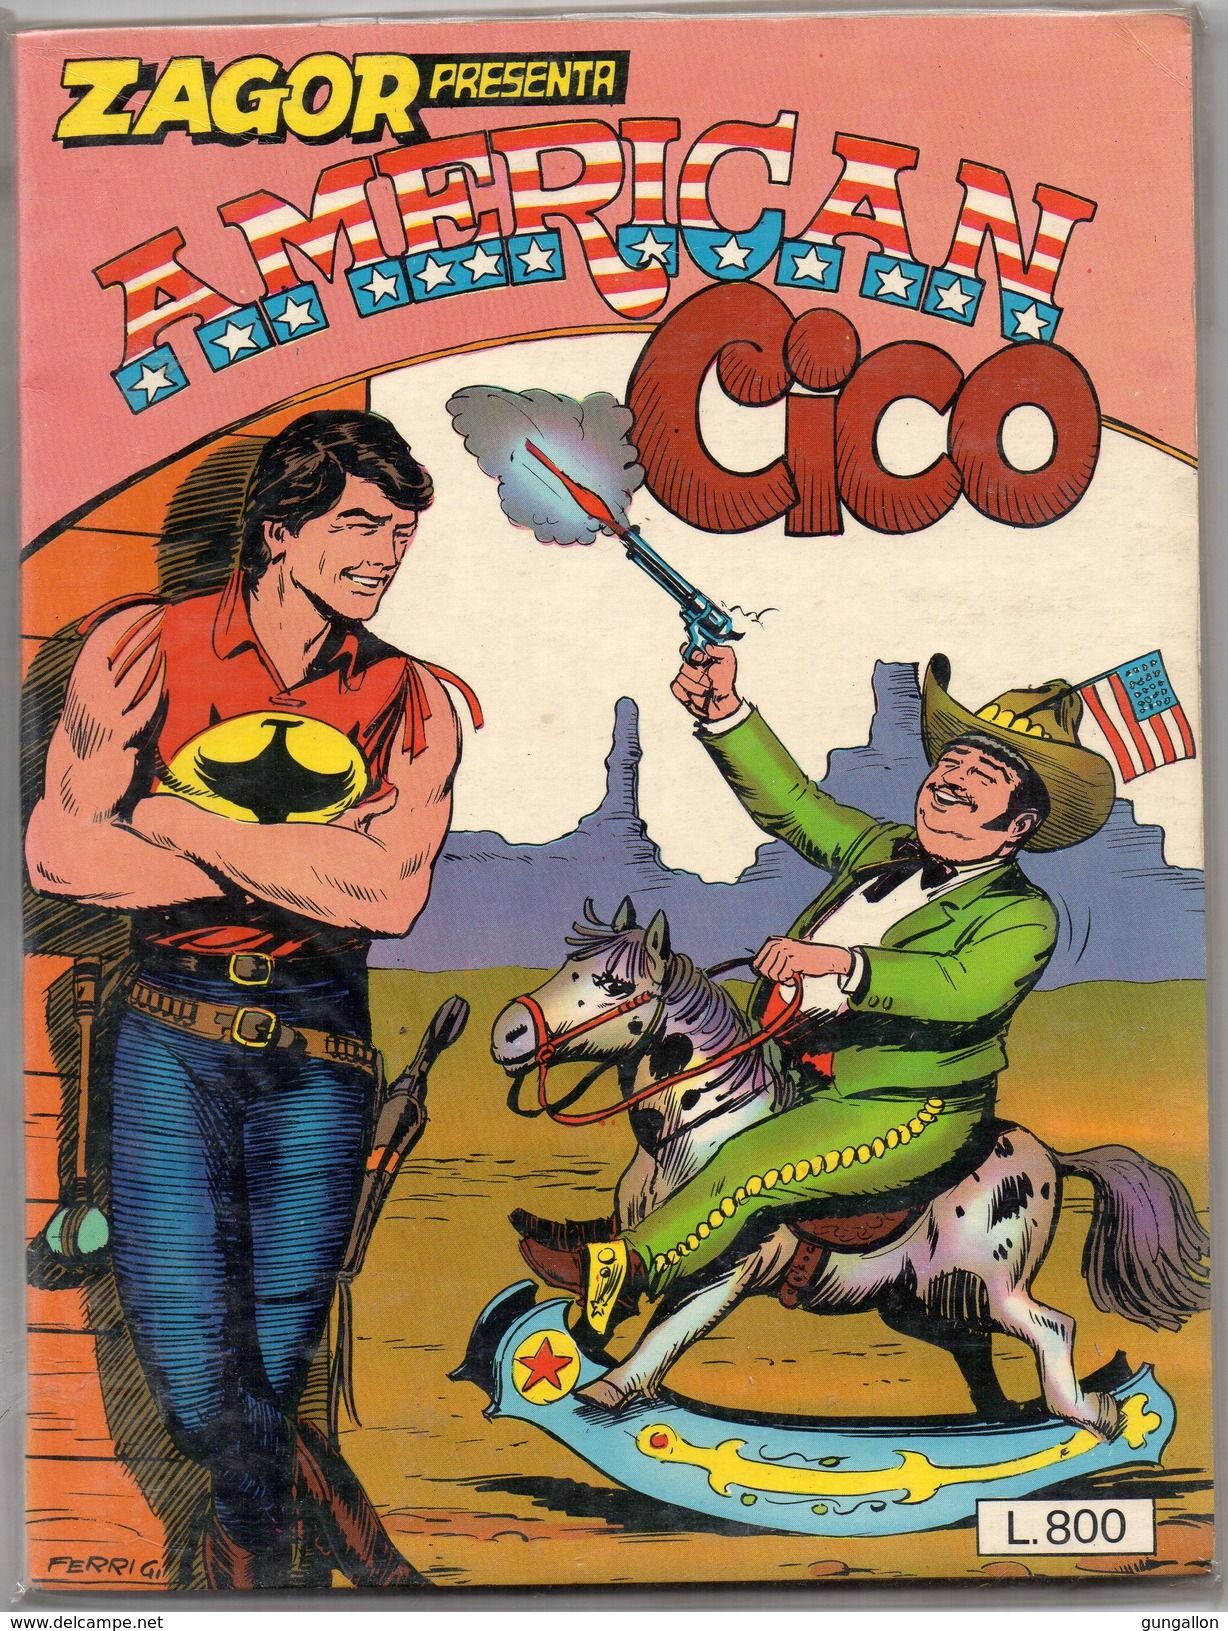 Zagor Presenta:(Daim Press 1980) "American Cico" - Zagor Zenith